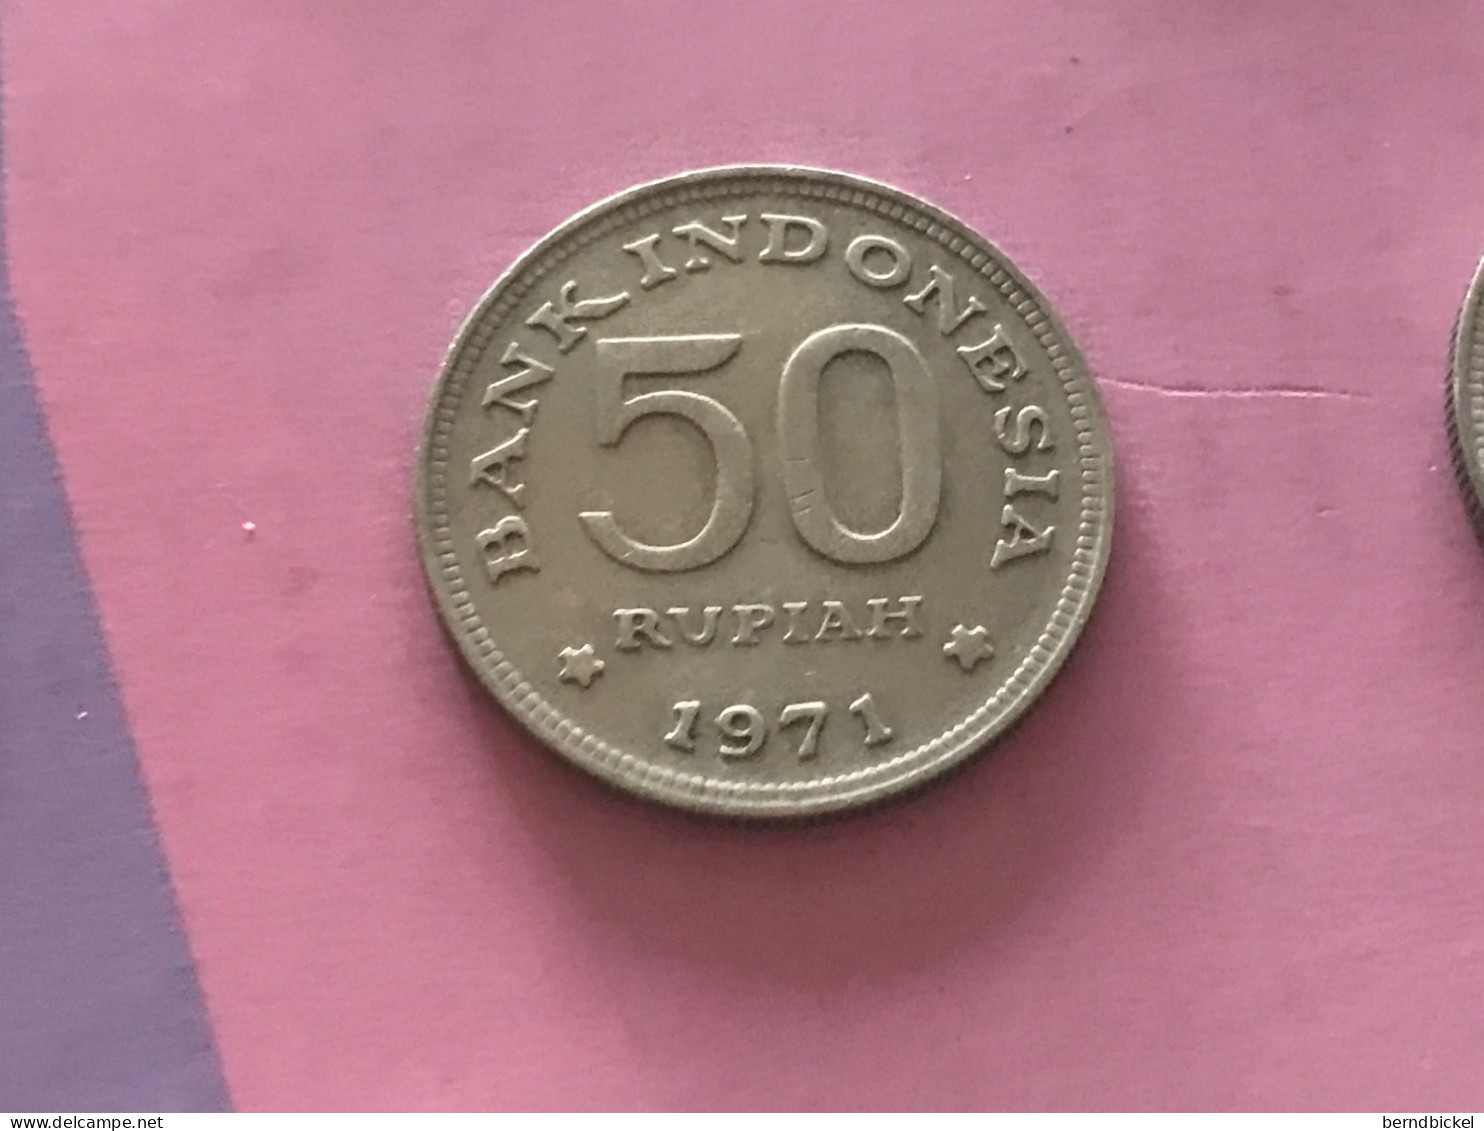 Münze Münzen Umlaufmünze Indonesien 50 Rupien 1971 - Indonésie